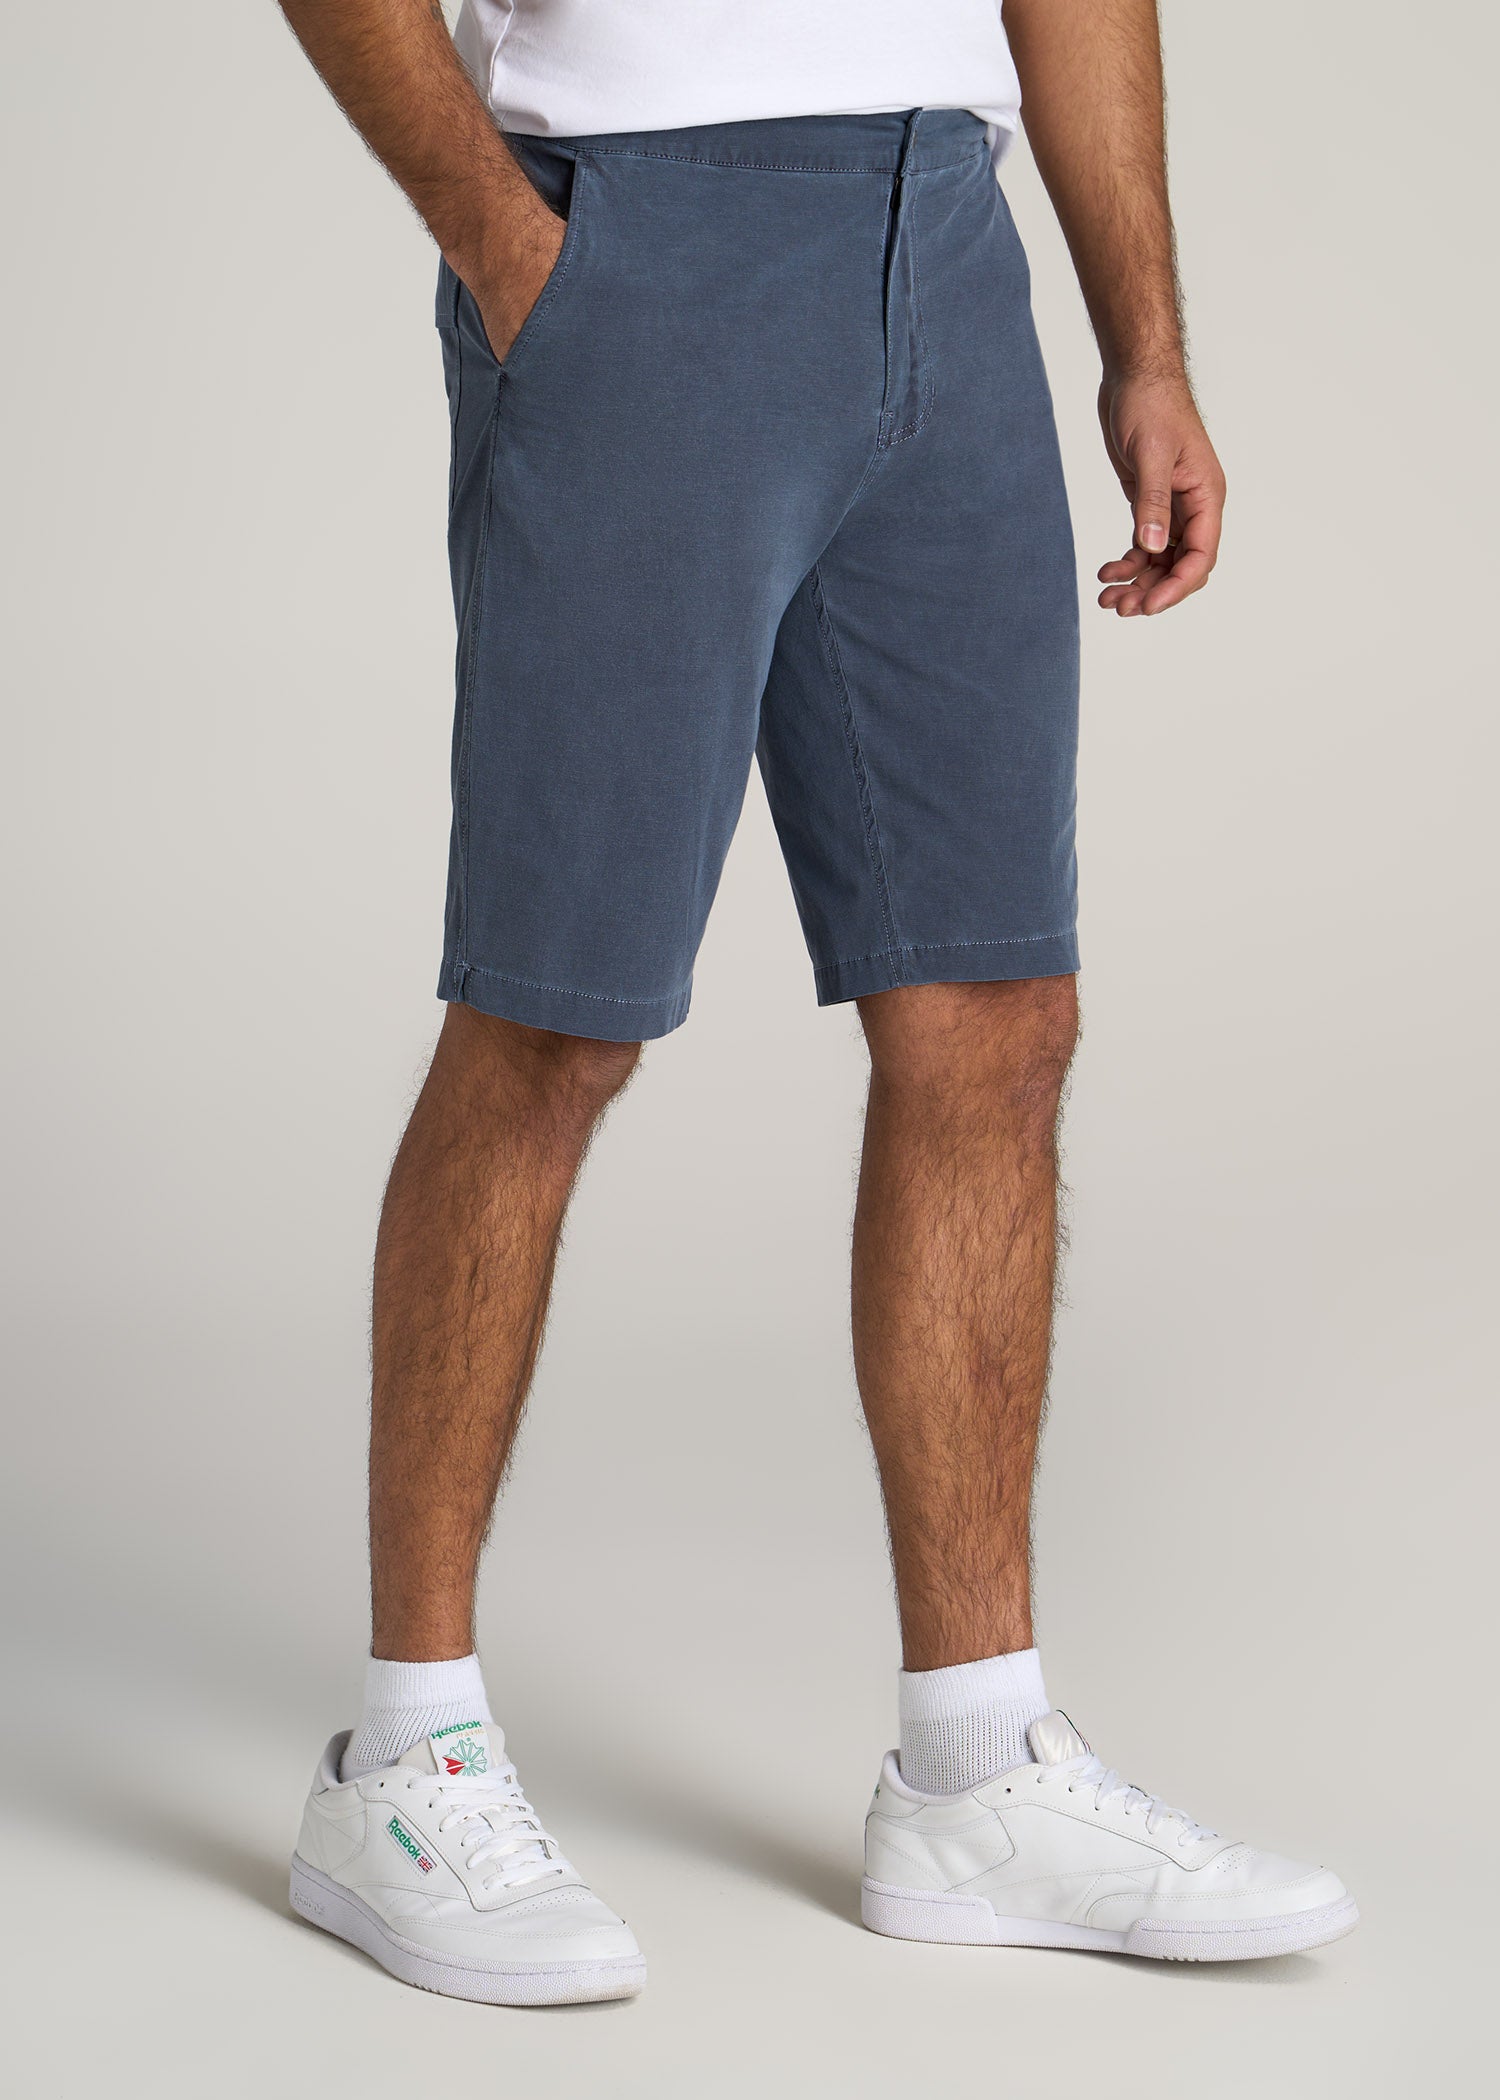 American-Tall-Men-LJ-Deck-Shorts-Vintage-Midnight-Navy-side